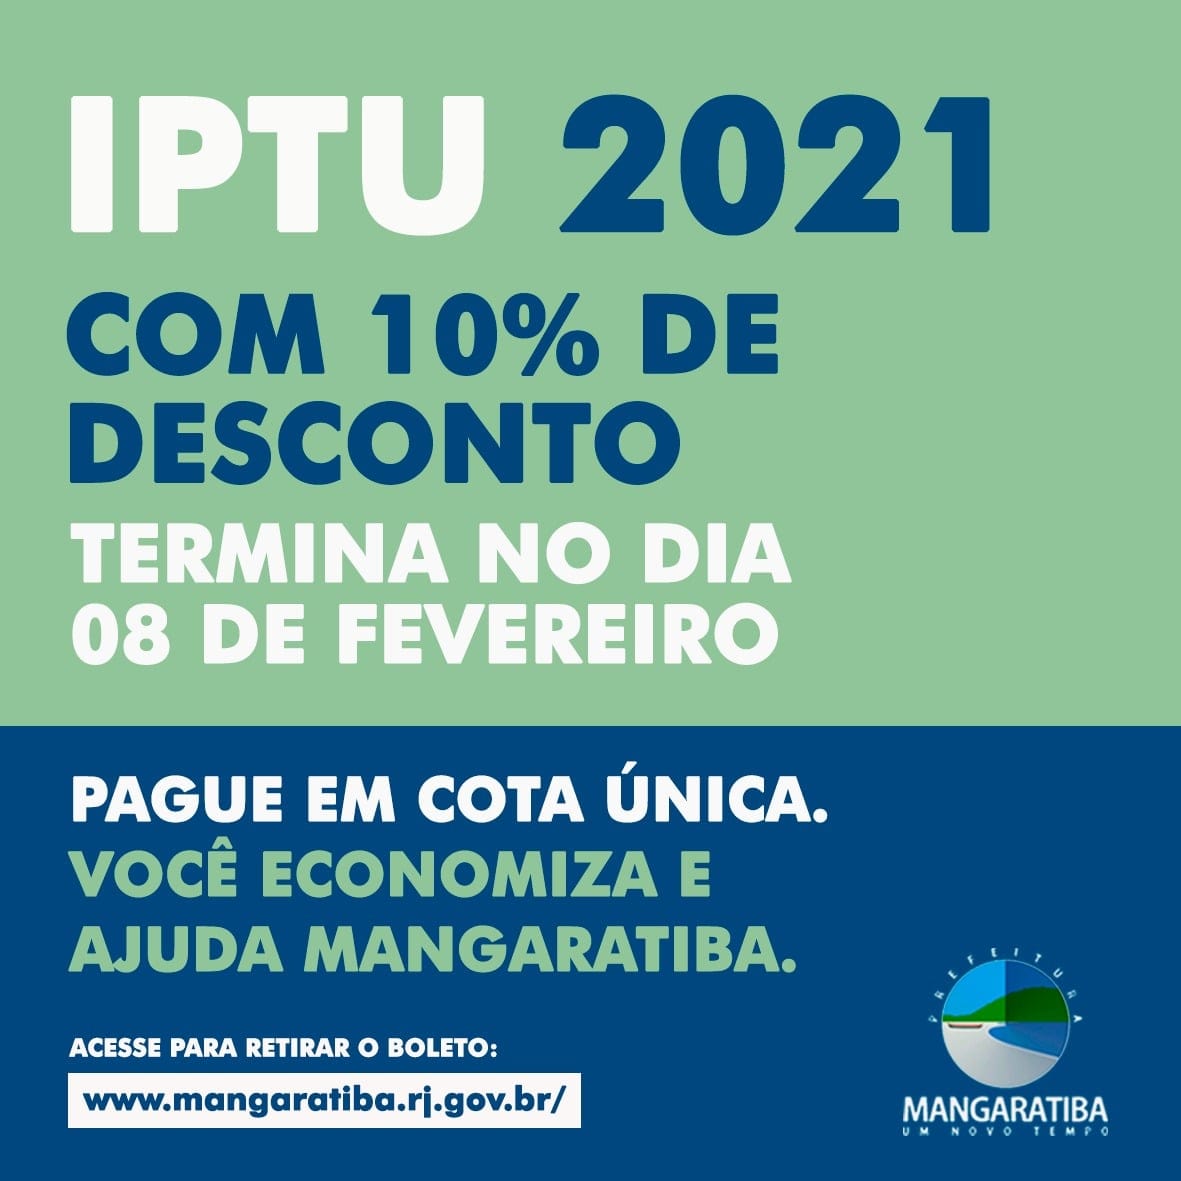 Desconto de 10% do IPTU 2021 termina dia 08 de fevereiro